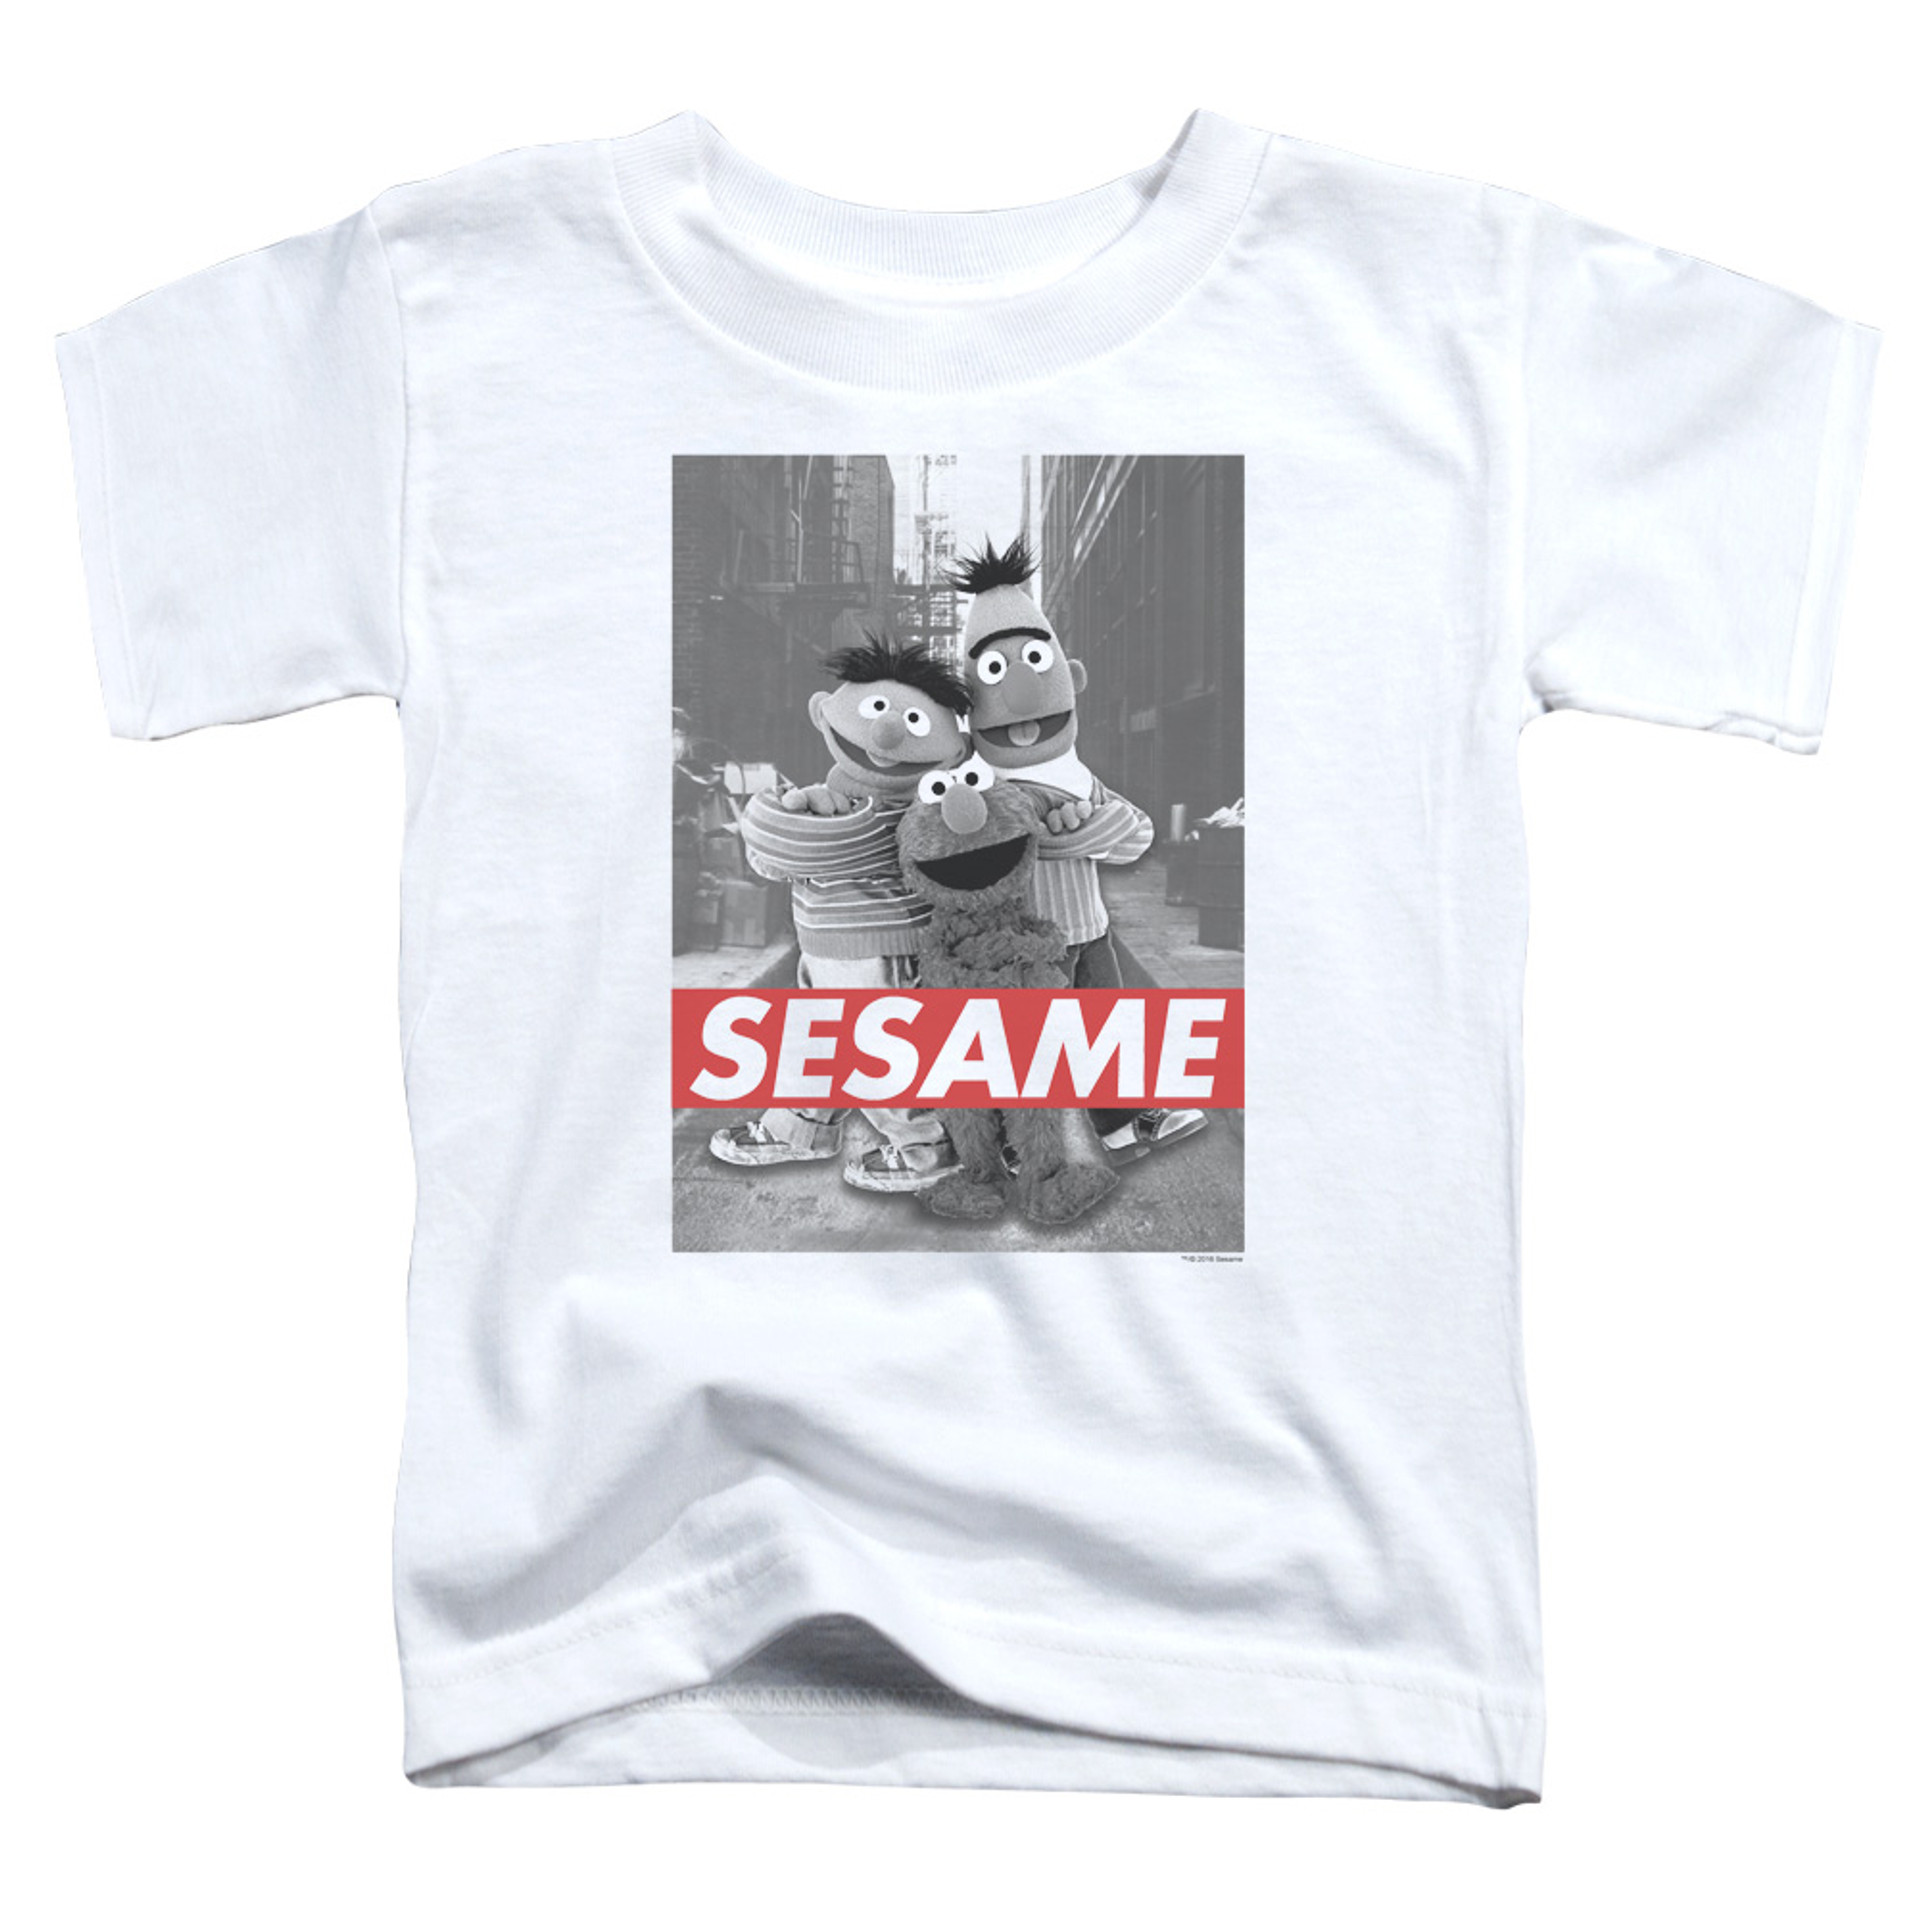 sesame street sesame t shirt white 8982 0repg